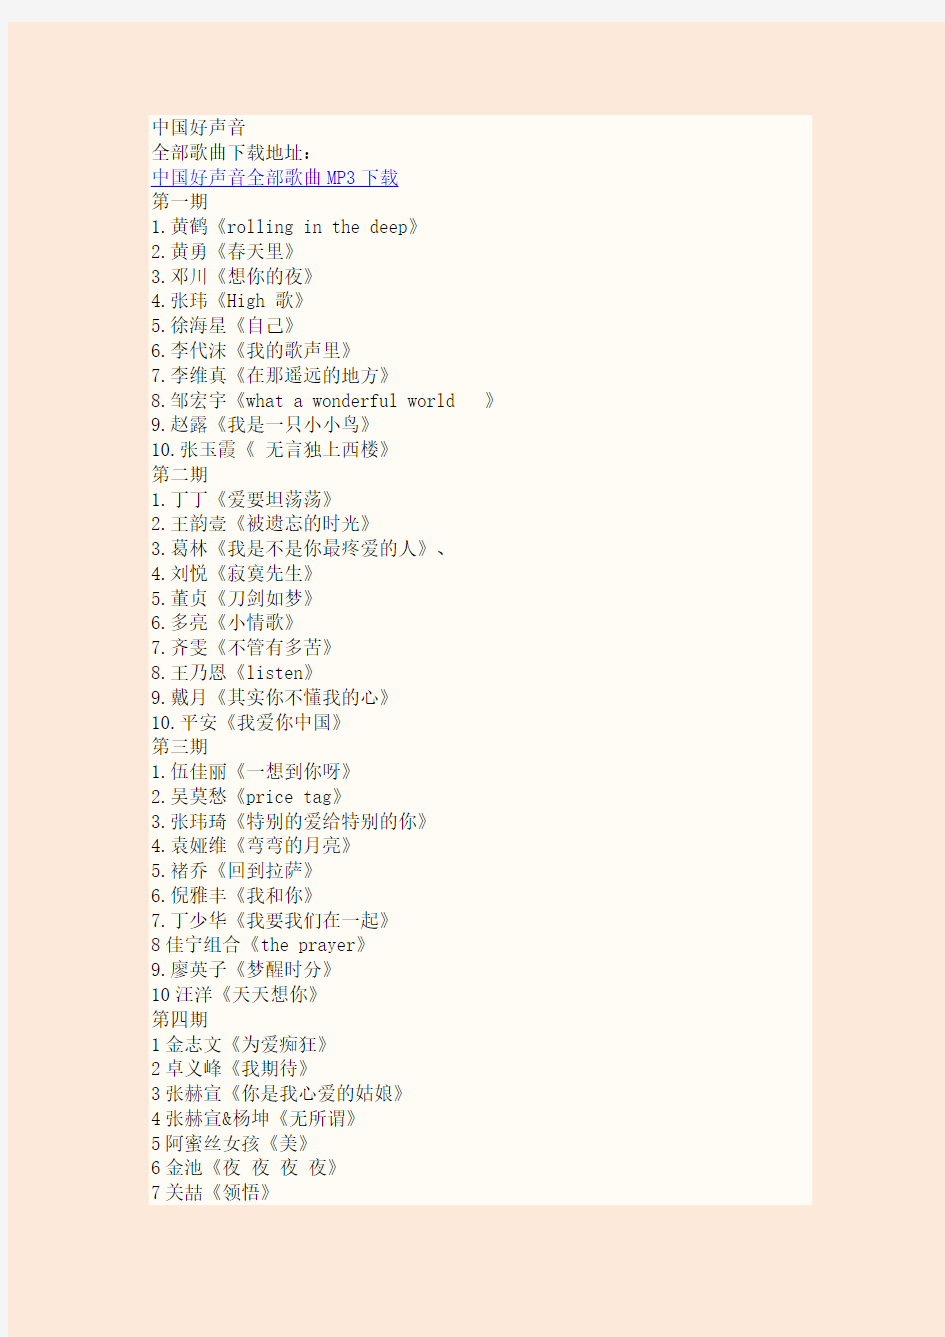 中国好声音全部歌曲名单及下载地址